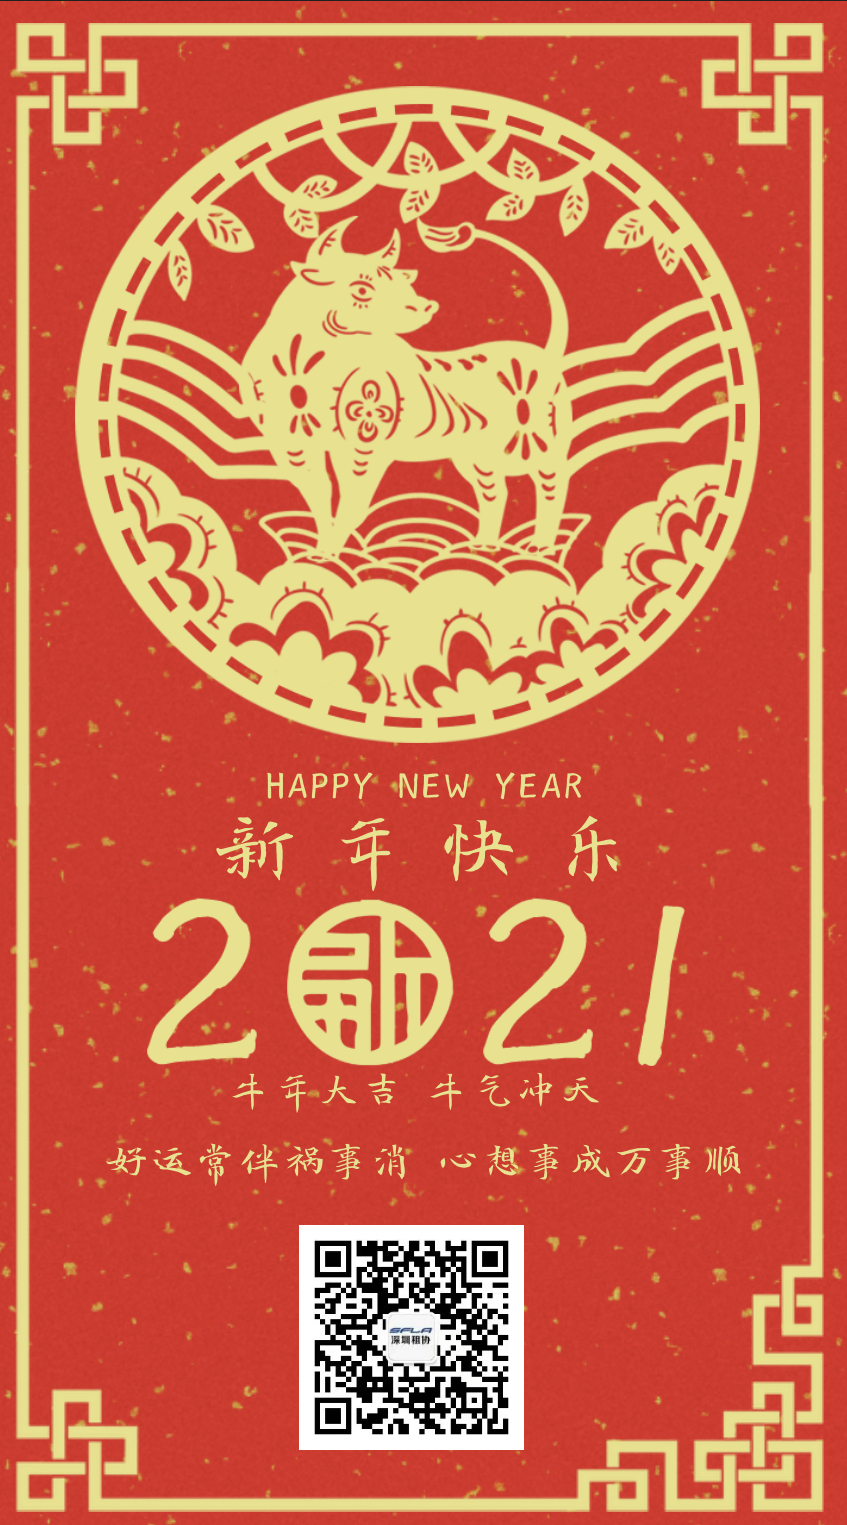 深圳市融资租赁行业协会恭祝大家新春快乐、万事顺意！